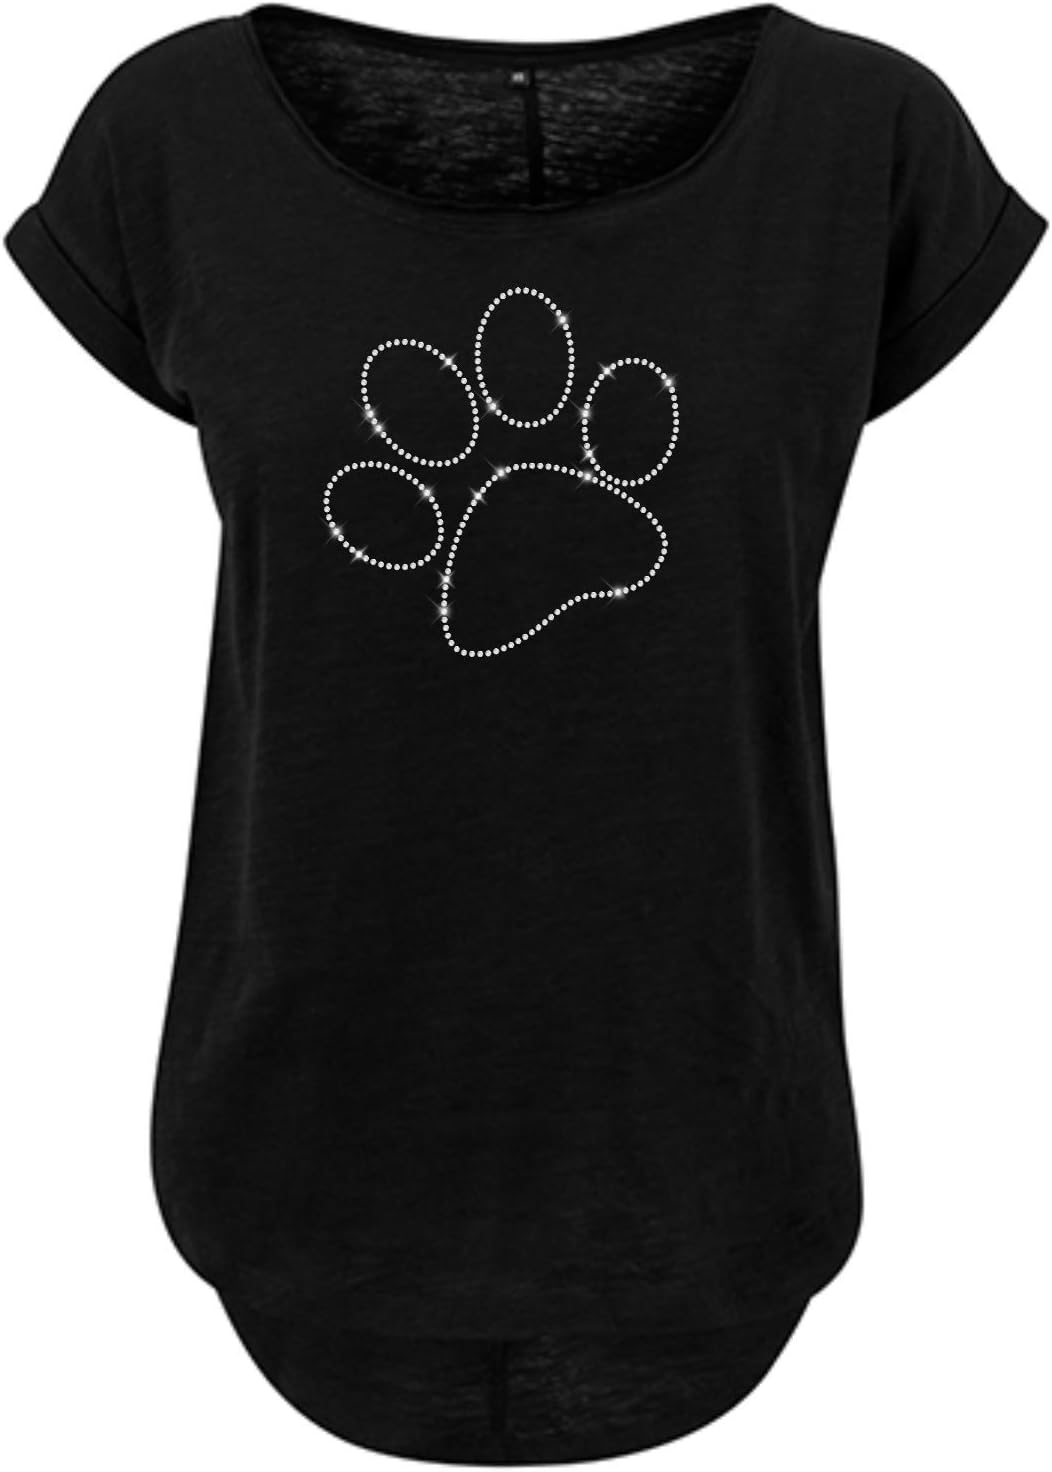 Blingeling® Hundepfoten Damen T-Shirt mit Strass